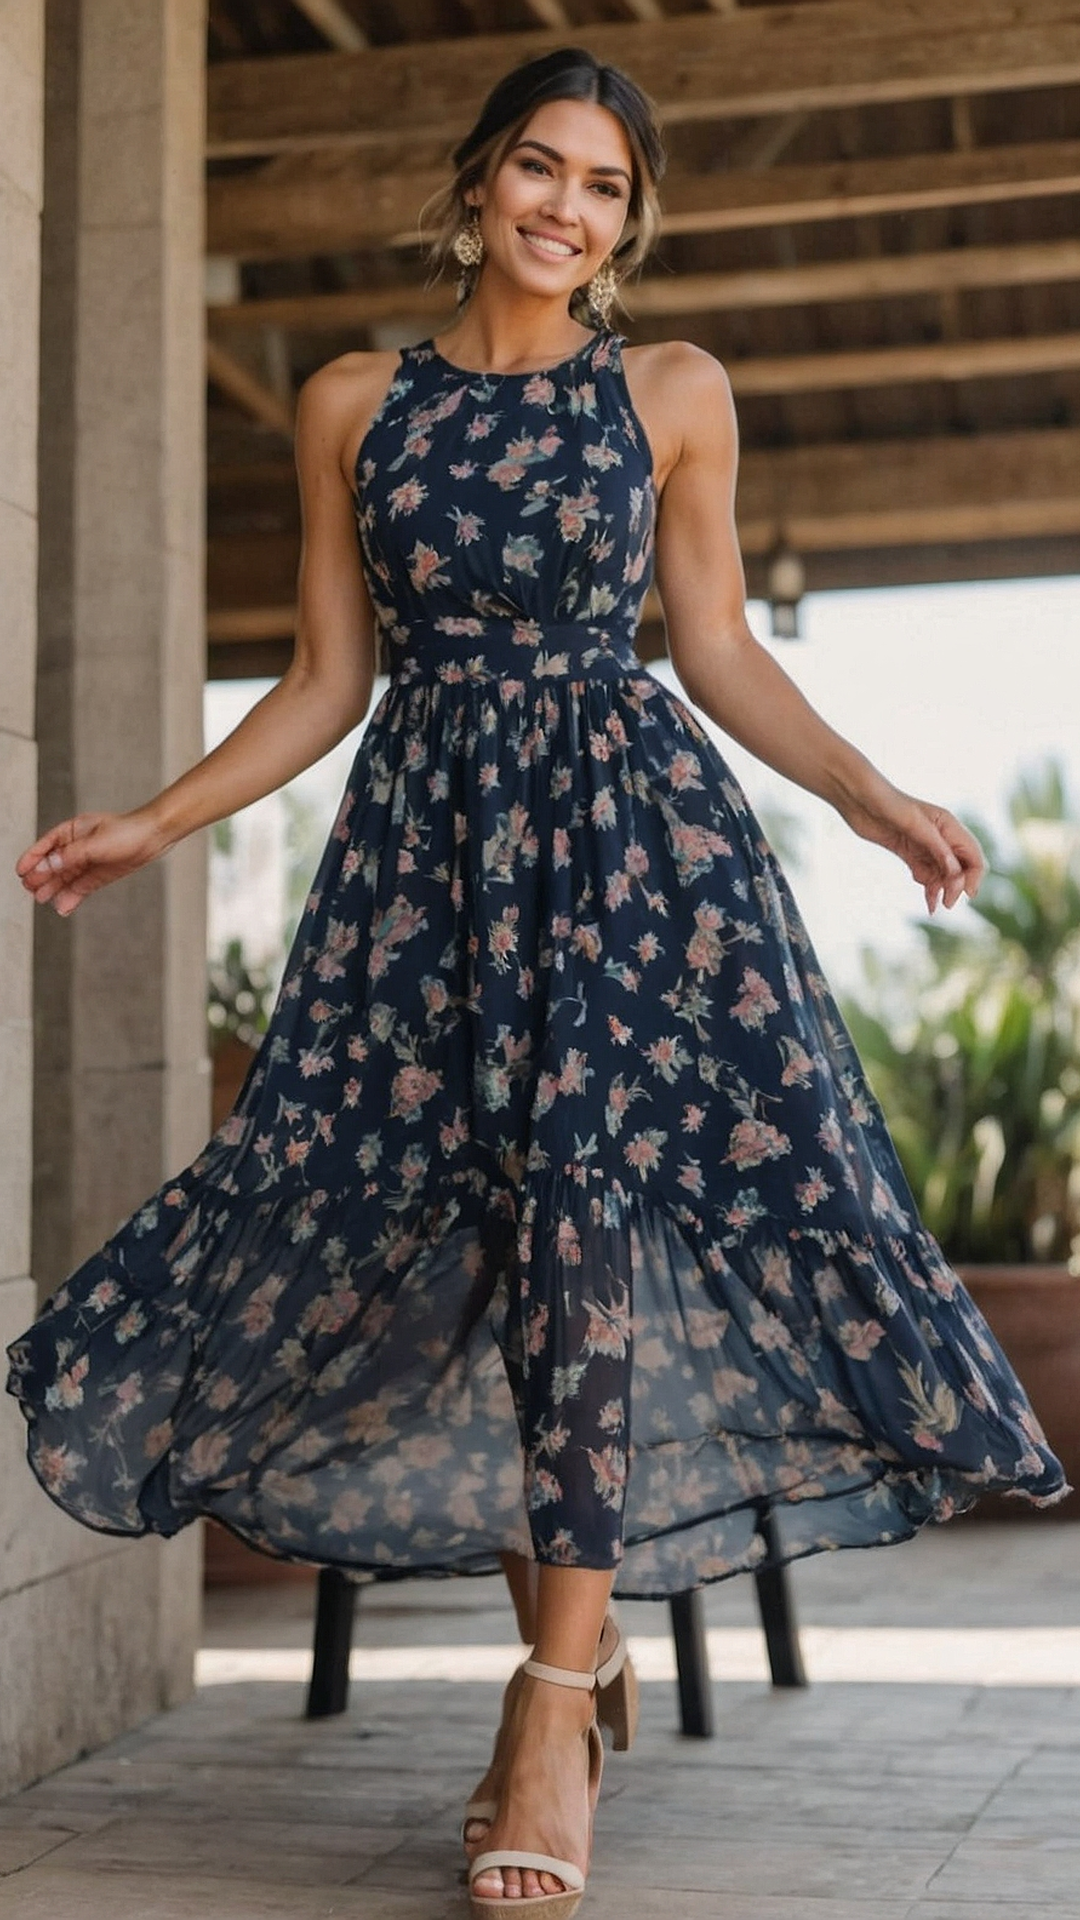 A Garden Affair: Floral Maxi Dress Selection